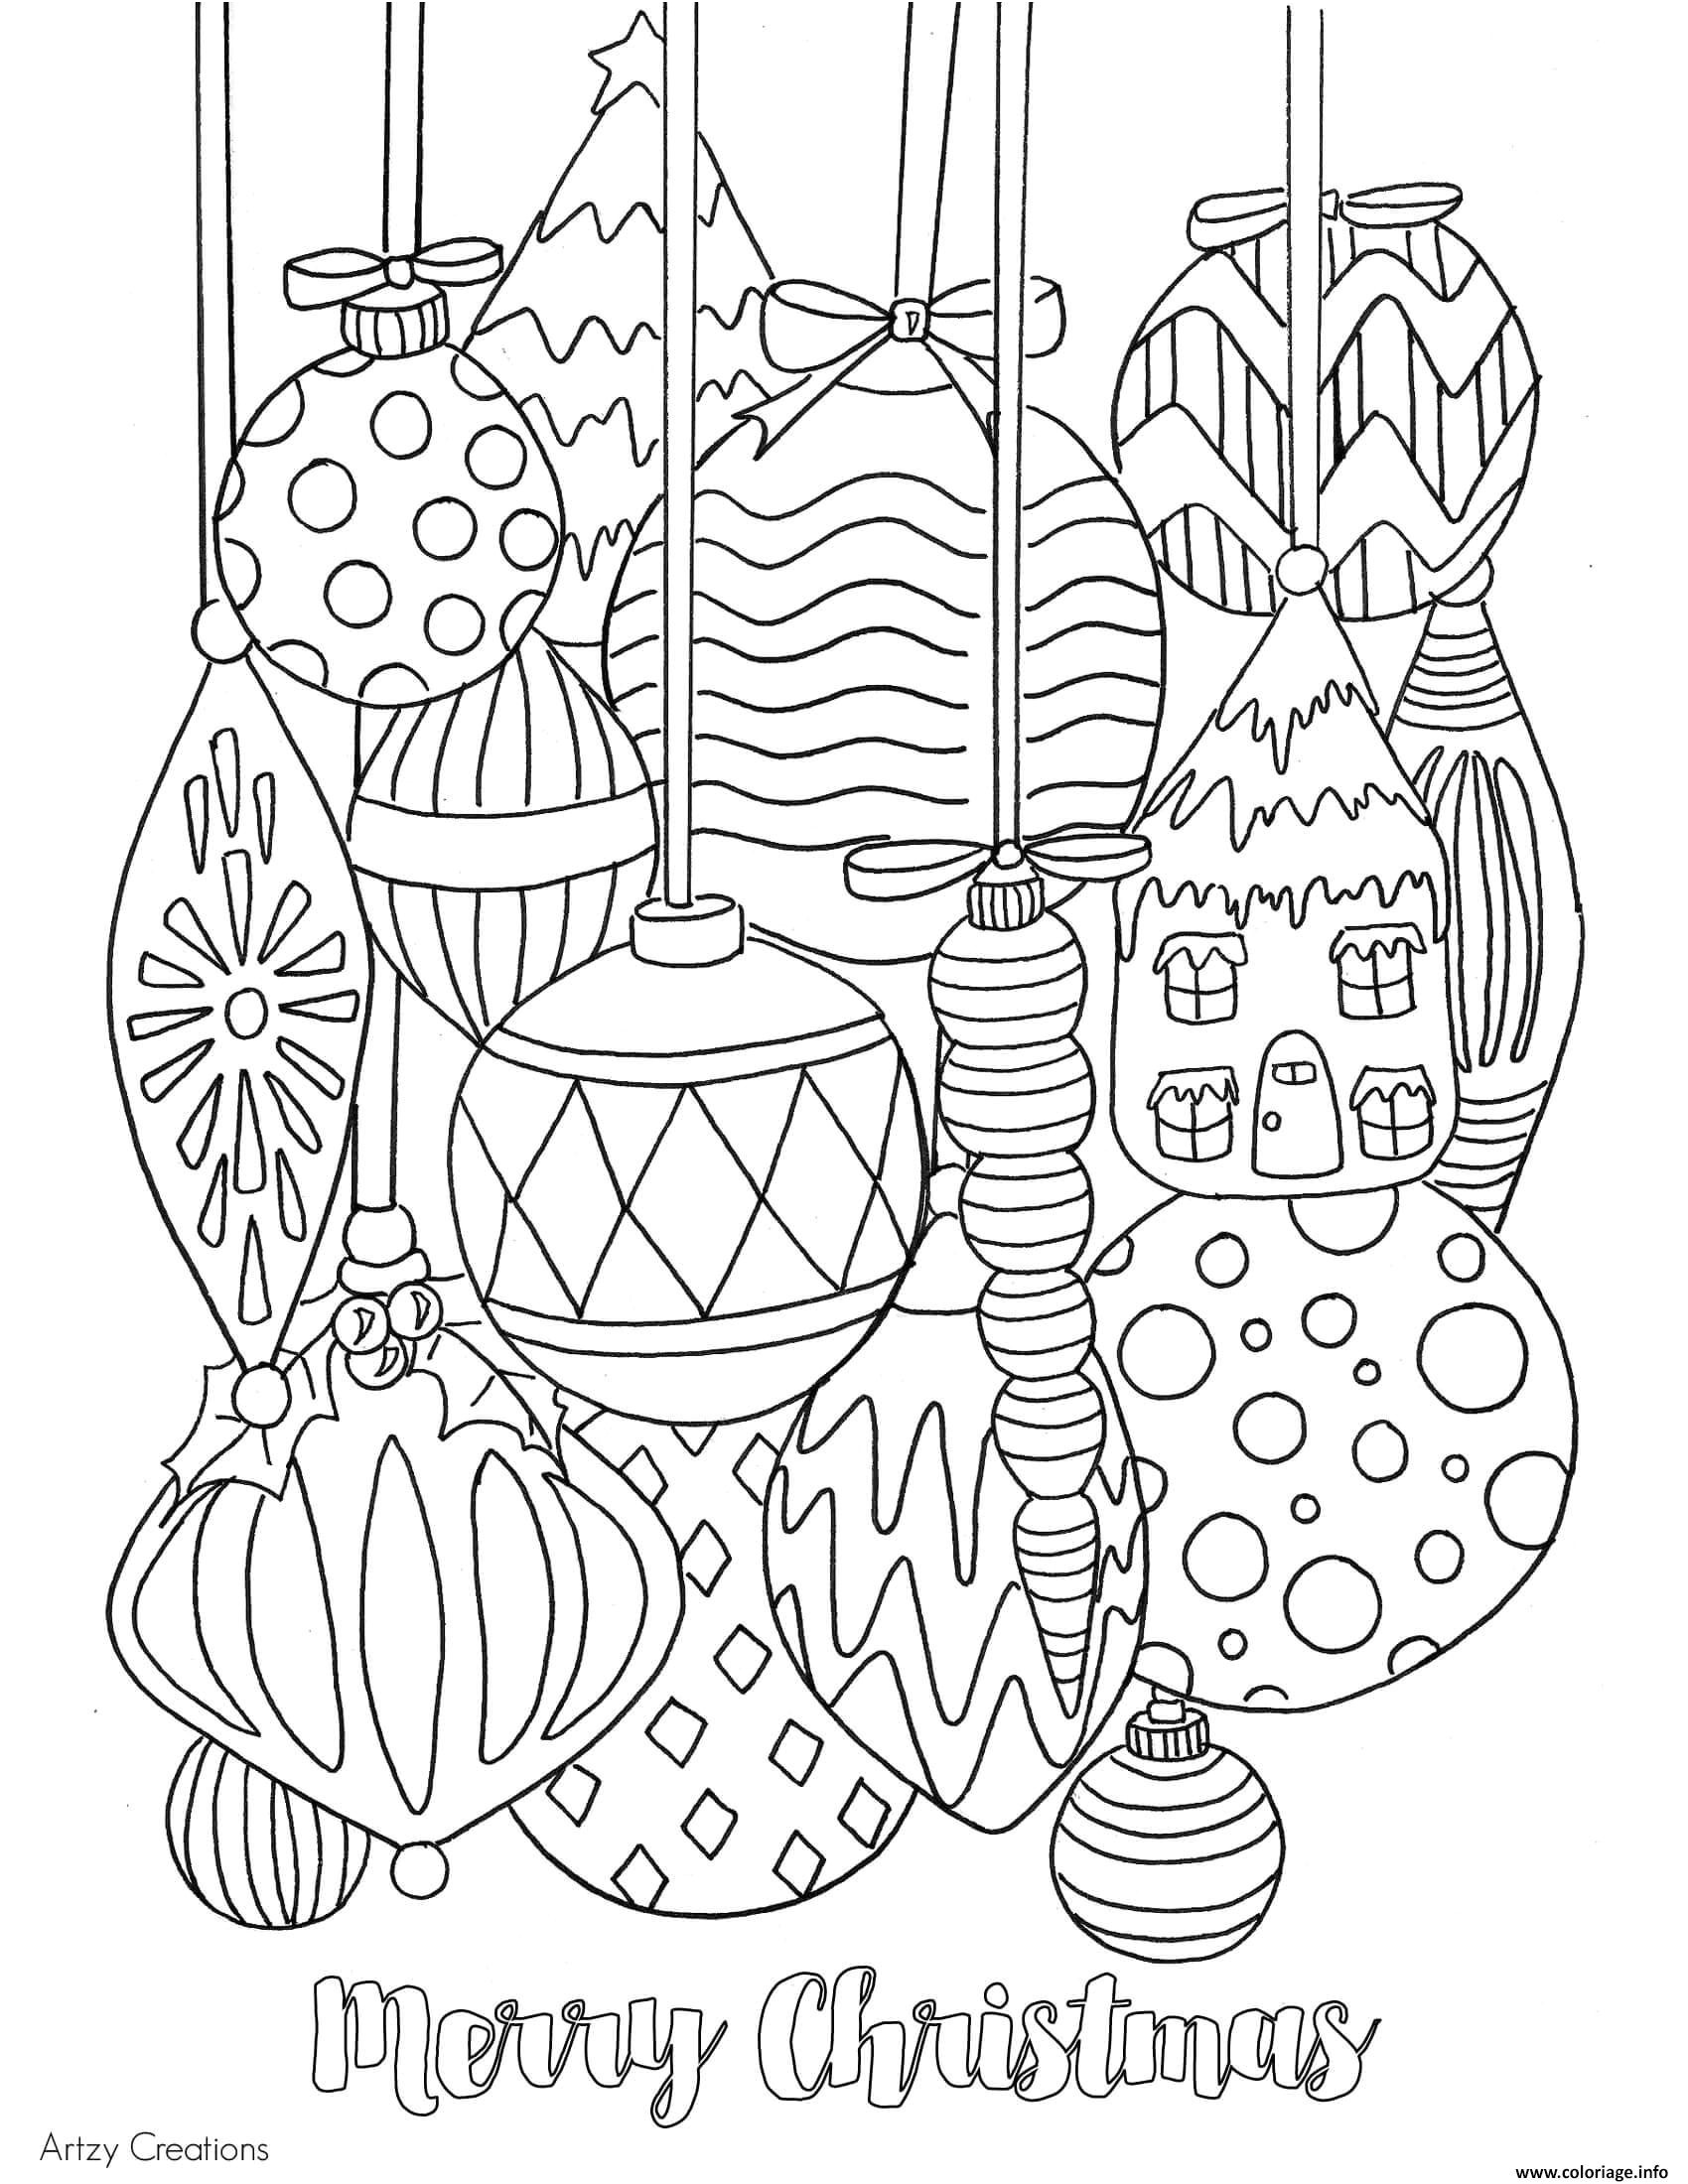 jeux de coloriage de mandala gratuit en ligne coloriage adulte boules de noel decoration dessin